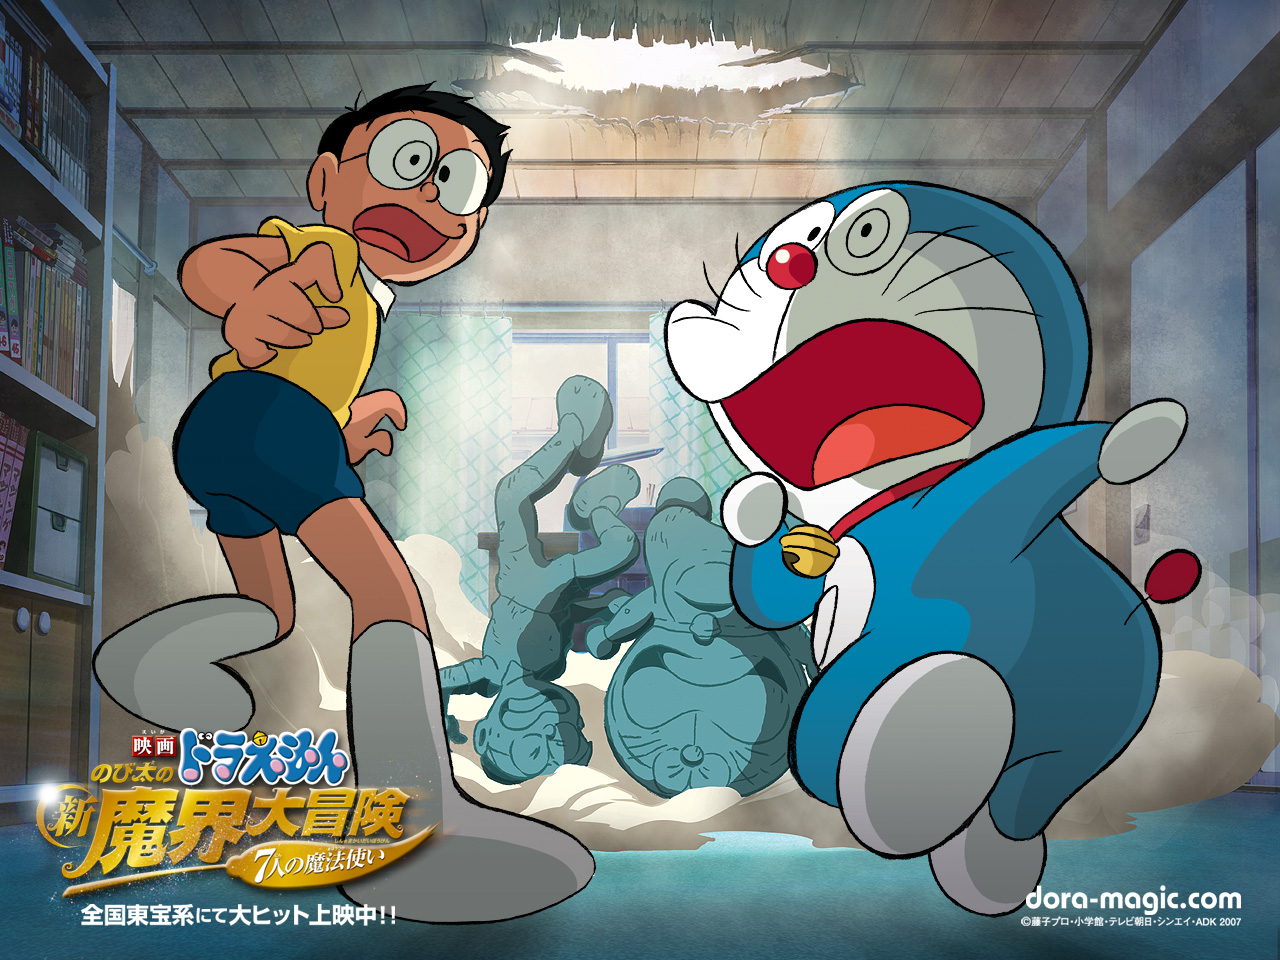 Mobile wallpaper: Anime, Doraemon, 1486616 download the picture ...